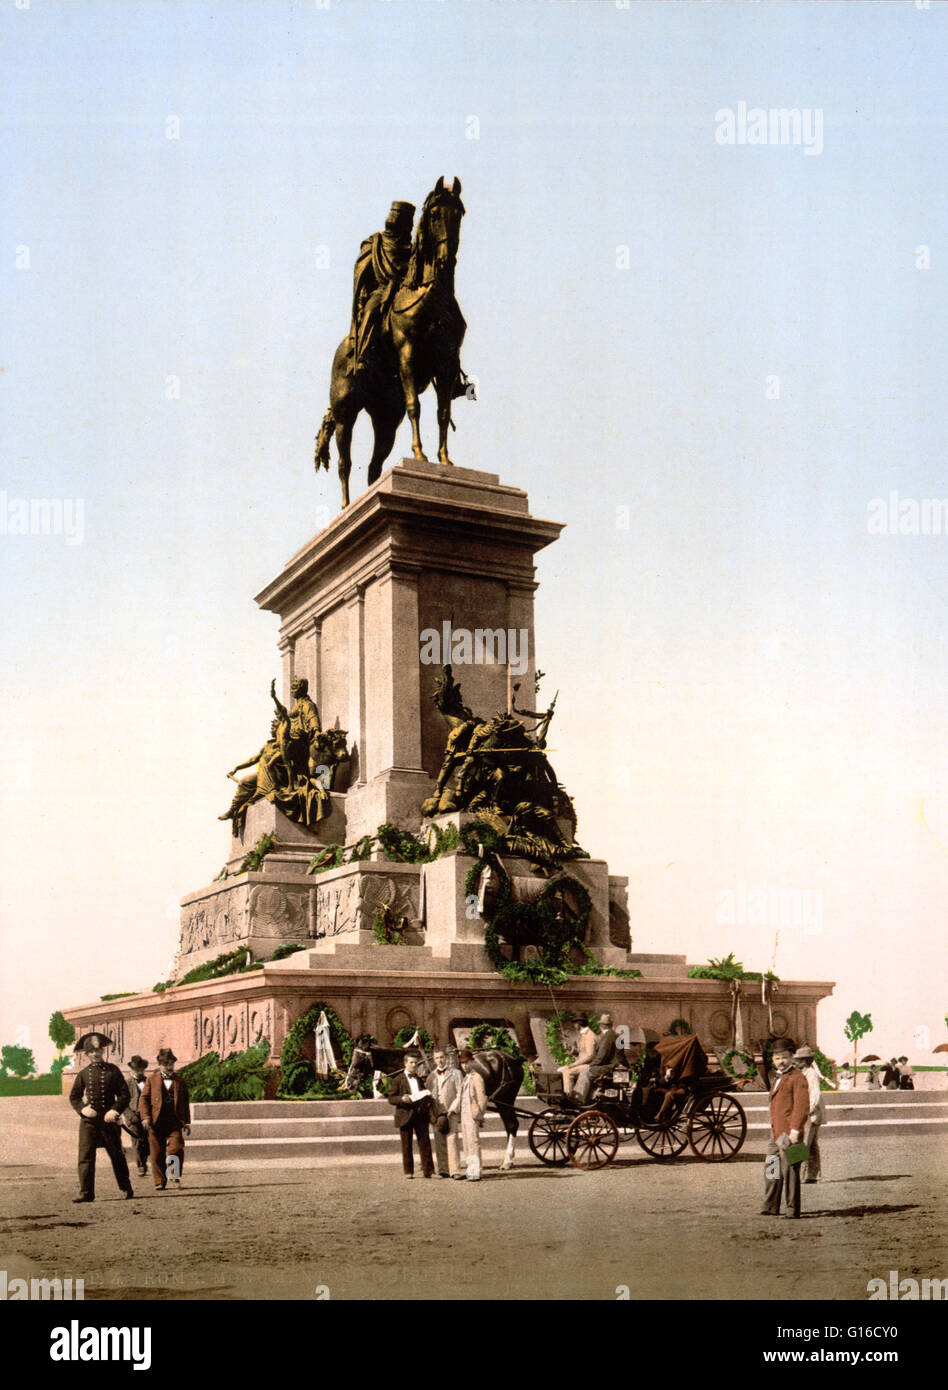 Il monumento equestre dedicato a Giuseppe Garibaldi è un imponente statua equestre collocato in Roma sul punto più alto del colle del Gianicolo. Il monumento è costituito da una statua di bronzo raffigurante l'eroe in sella ad un cavallo che è collocato su un grande marbl Foto Stock